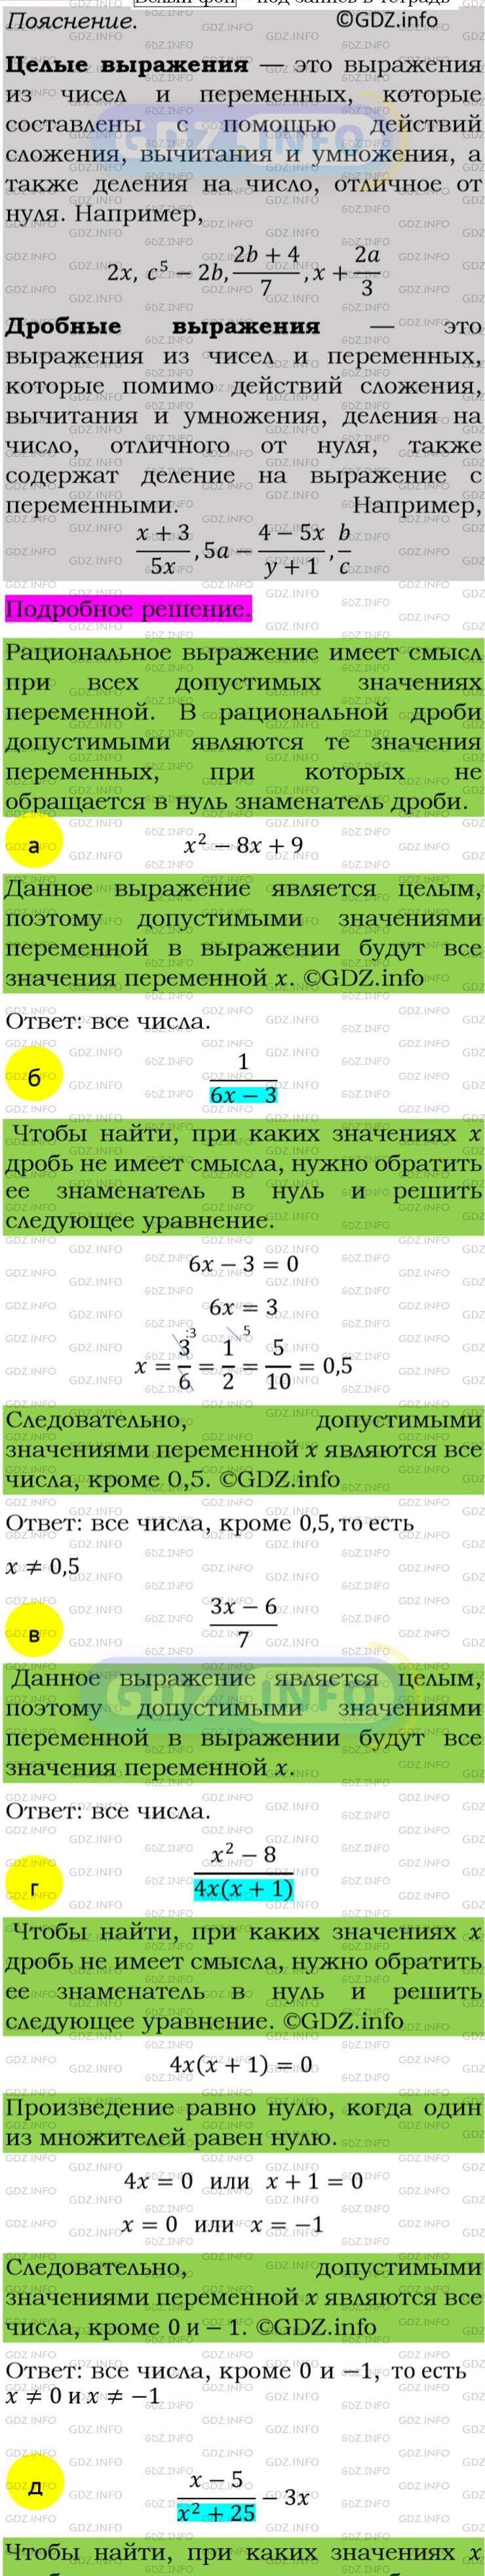 Фото подробного решения: Номер задания №11 из ГДЗ по Алгебре 8 класс: Макарычев Ю.Н.